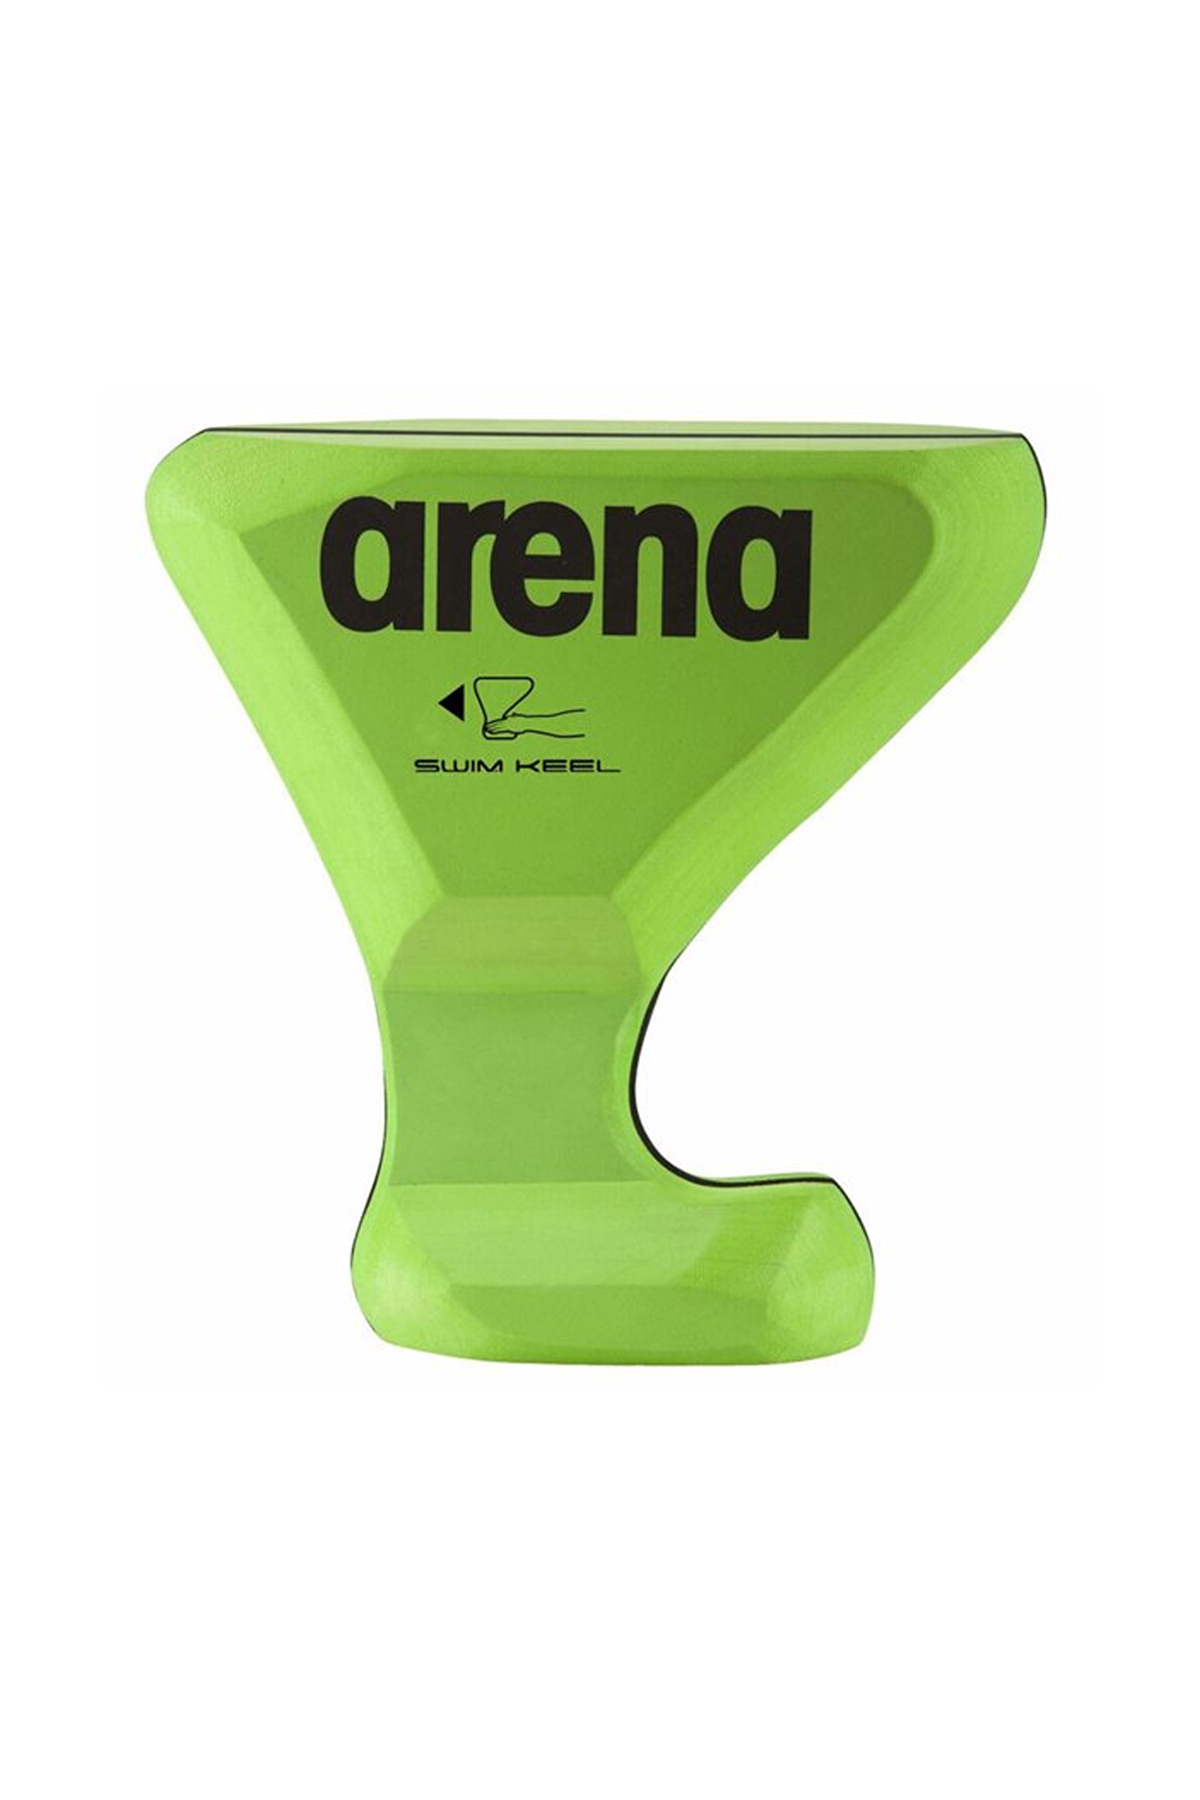 Arena 1E35865 - Yüzme Keel